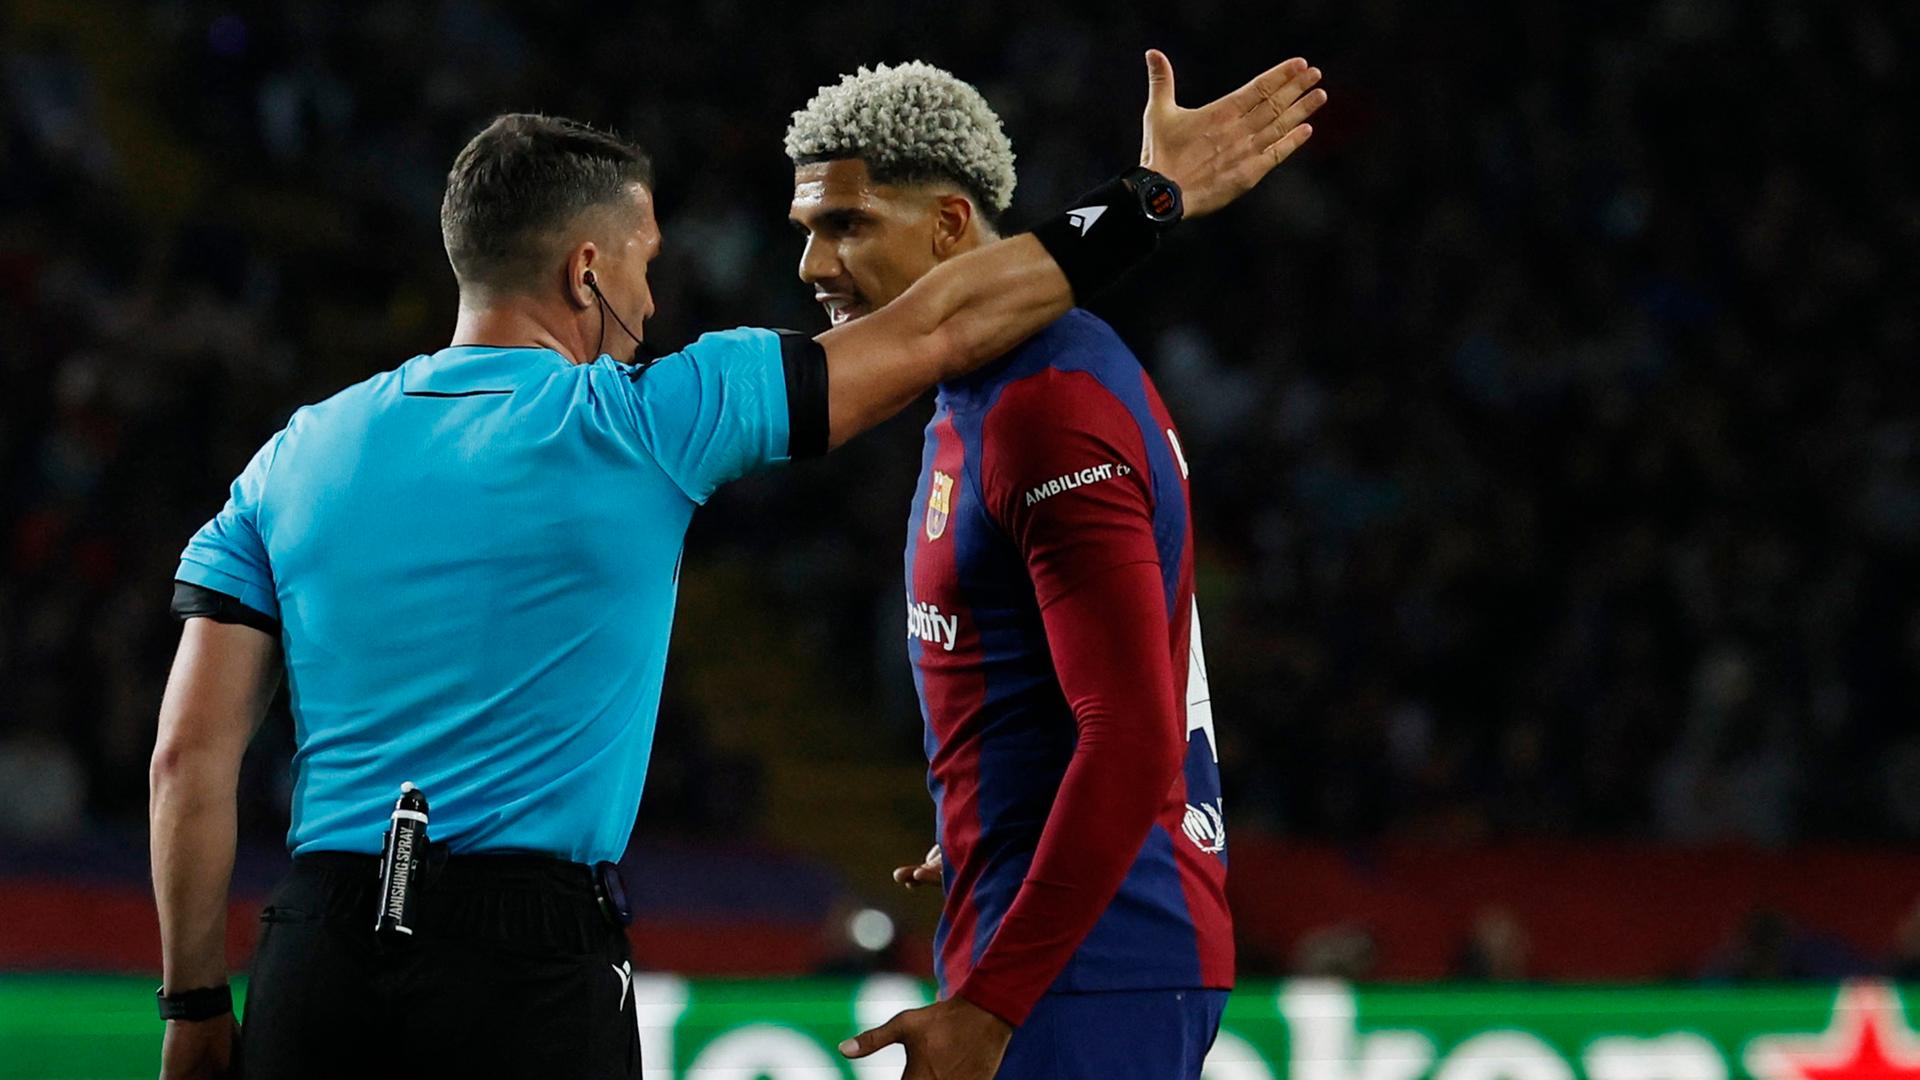 Ronald Araújo diskutiert mit dem Schiedsrichter nachdem dieser ihm die Rote Karte gezeigt hatte.